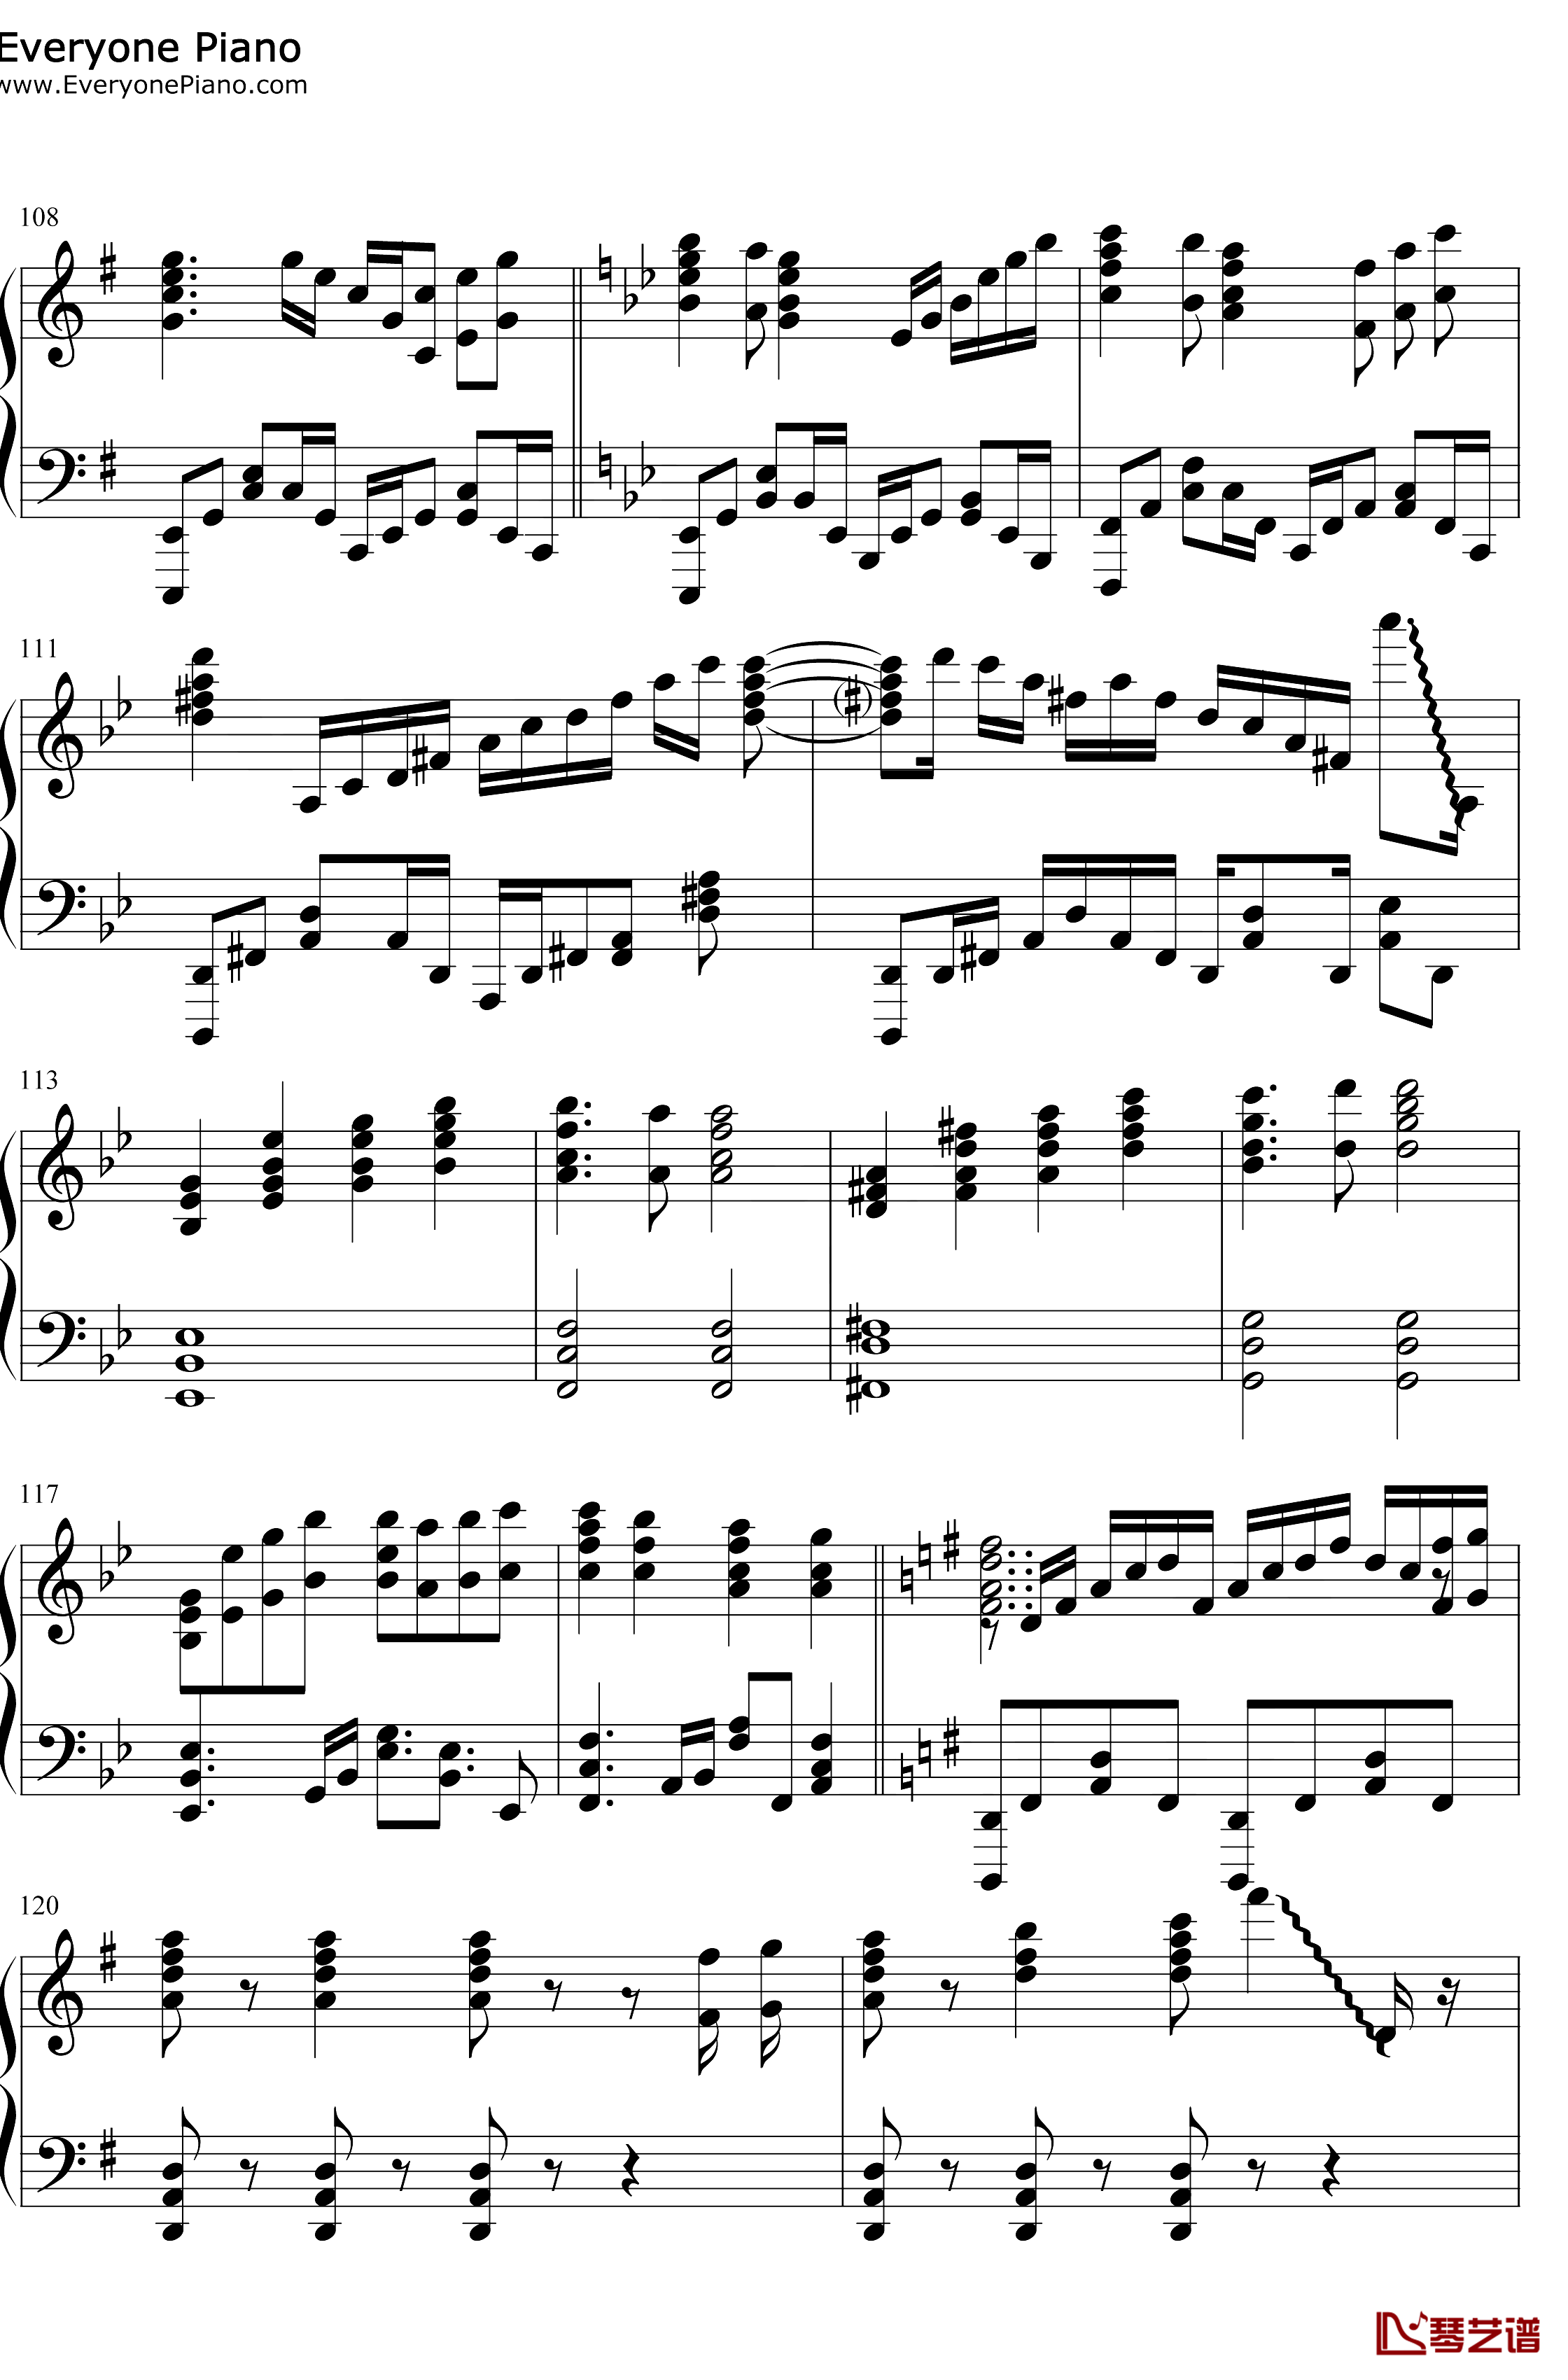 スマイルスキル=スキスキル钢琴谱-麦露烈娜梅维丝珀琳-我不是说了能力要平均值么OP11